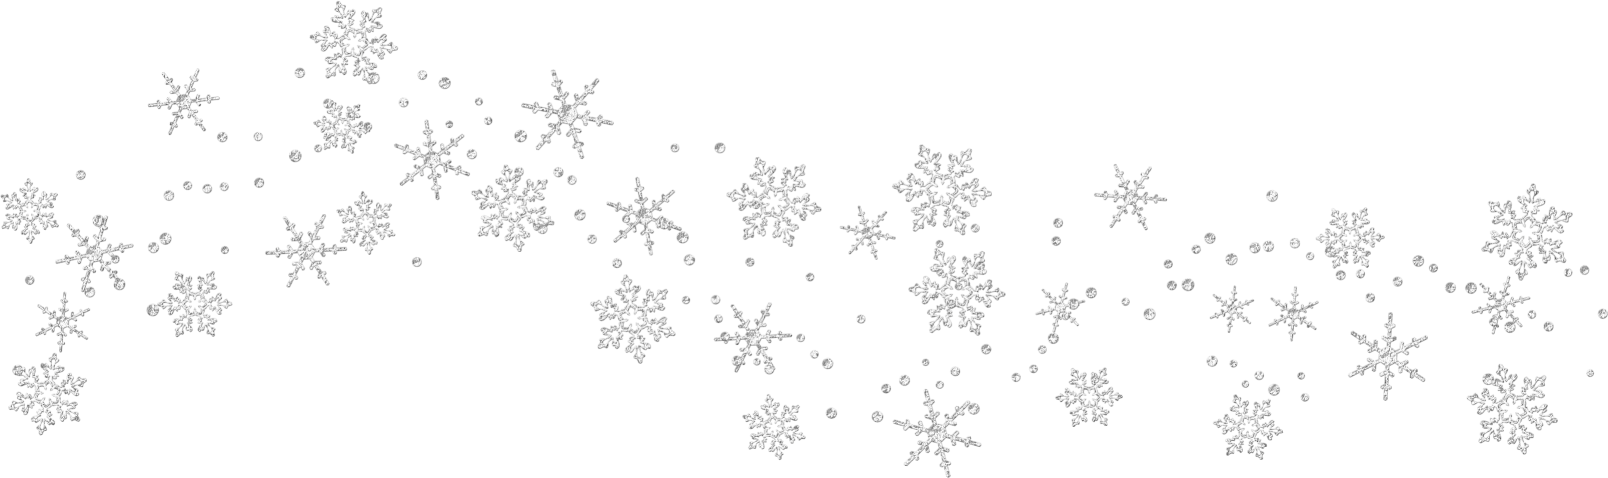 Falling Snowflakes Clip Art Snow. Snowjet.co 